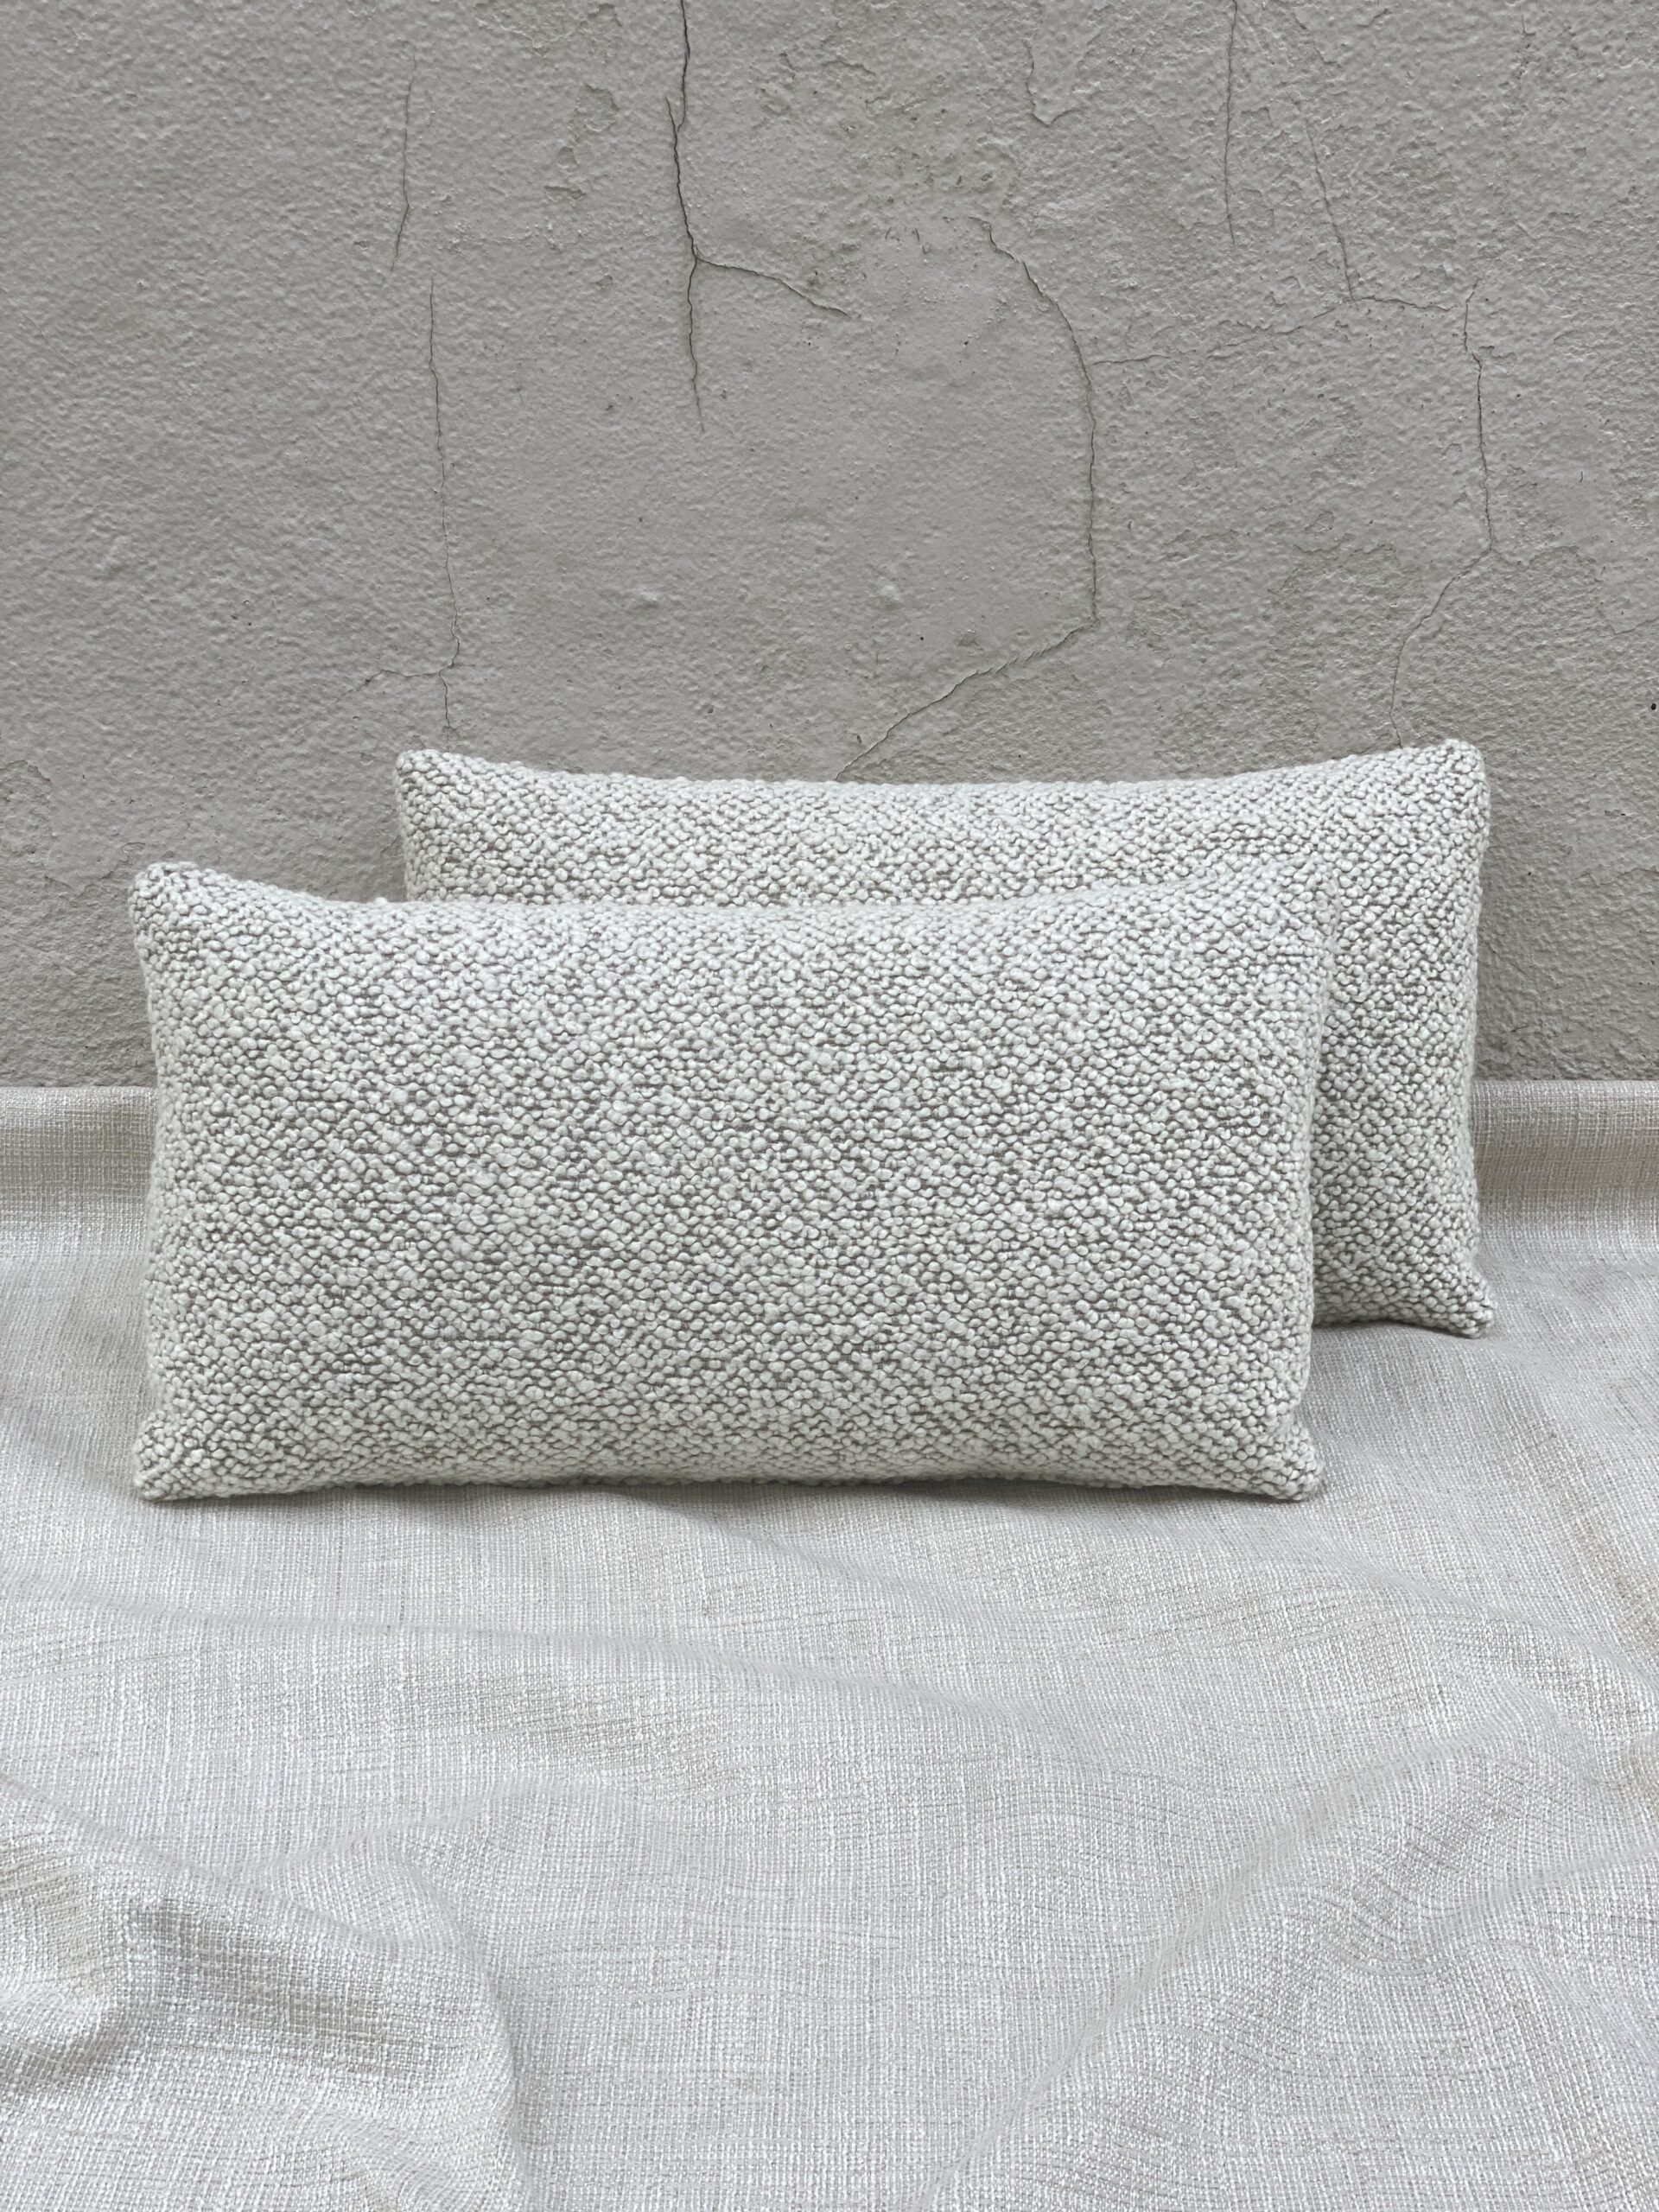 Kravet Babbit Pillows